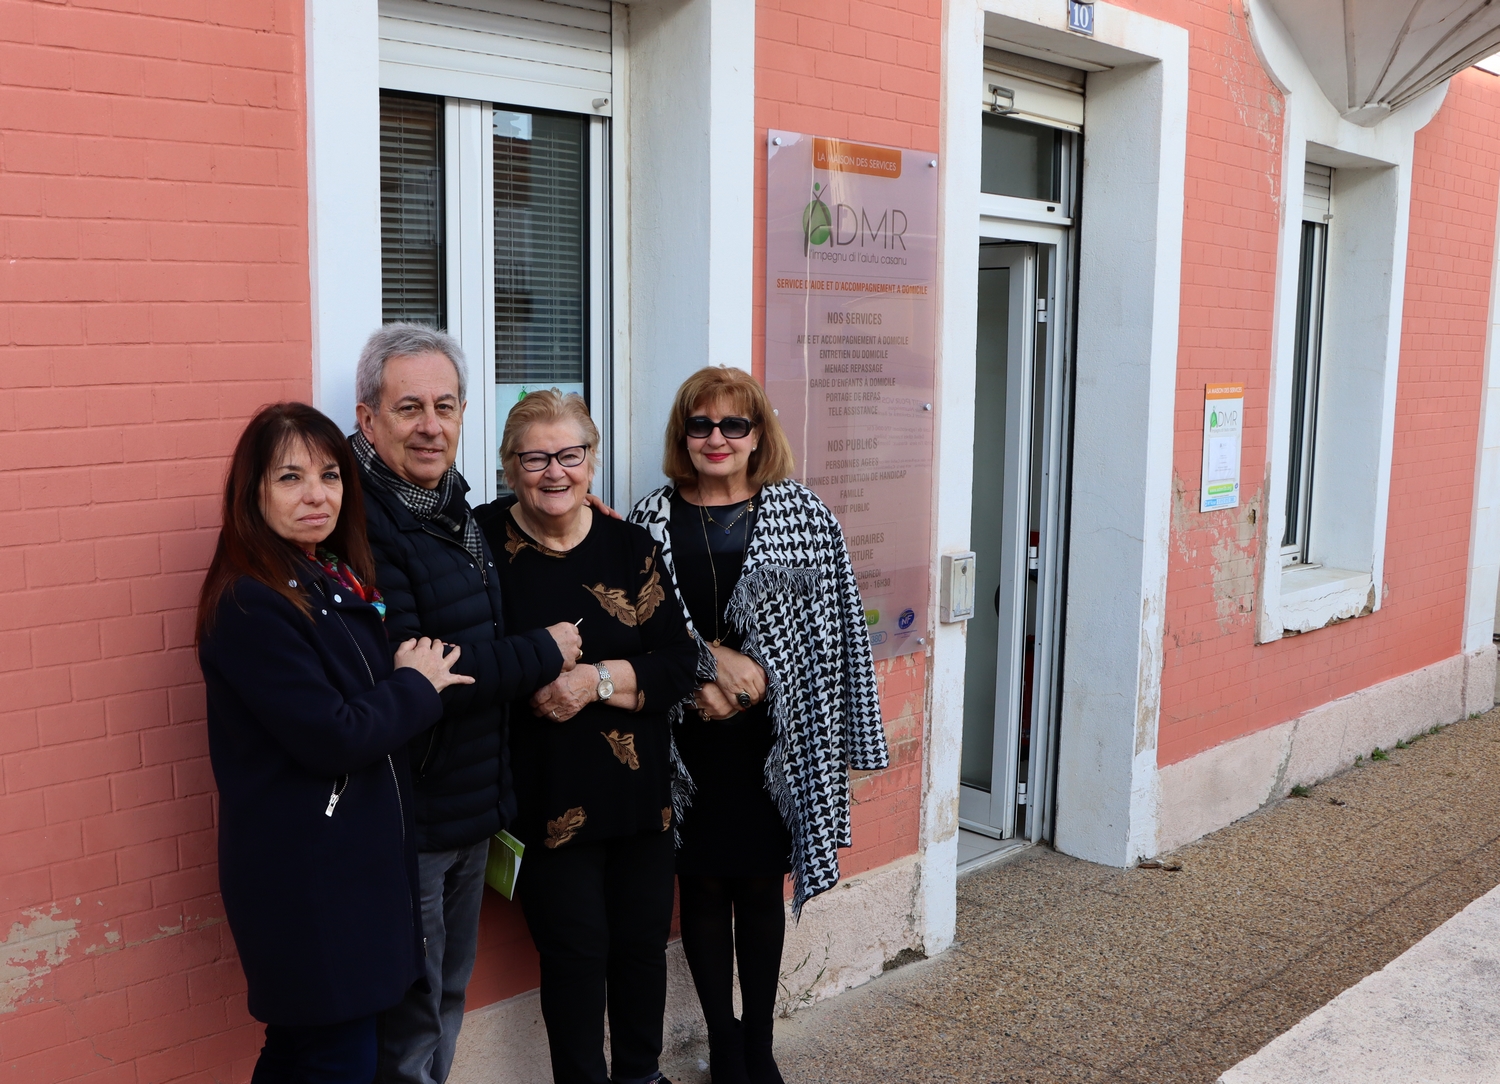 Remise des cles avec de gauche à droite Hélène Astolfi, Ange Santini, Mireille Maraninchi et Chantal Maire-Bernardini